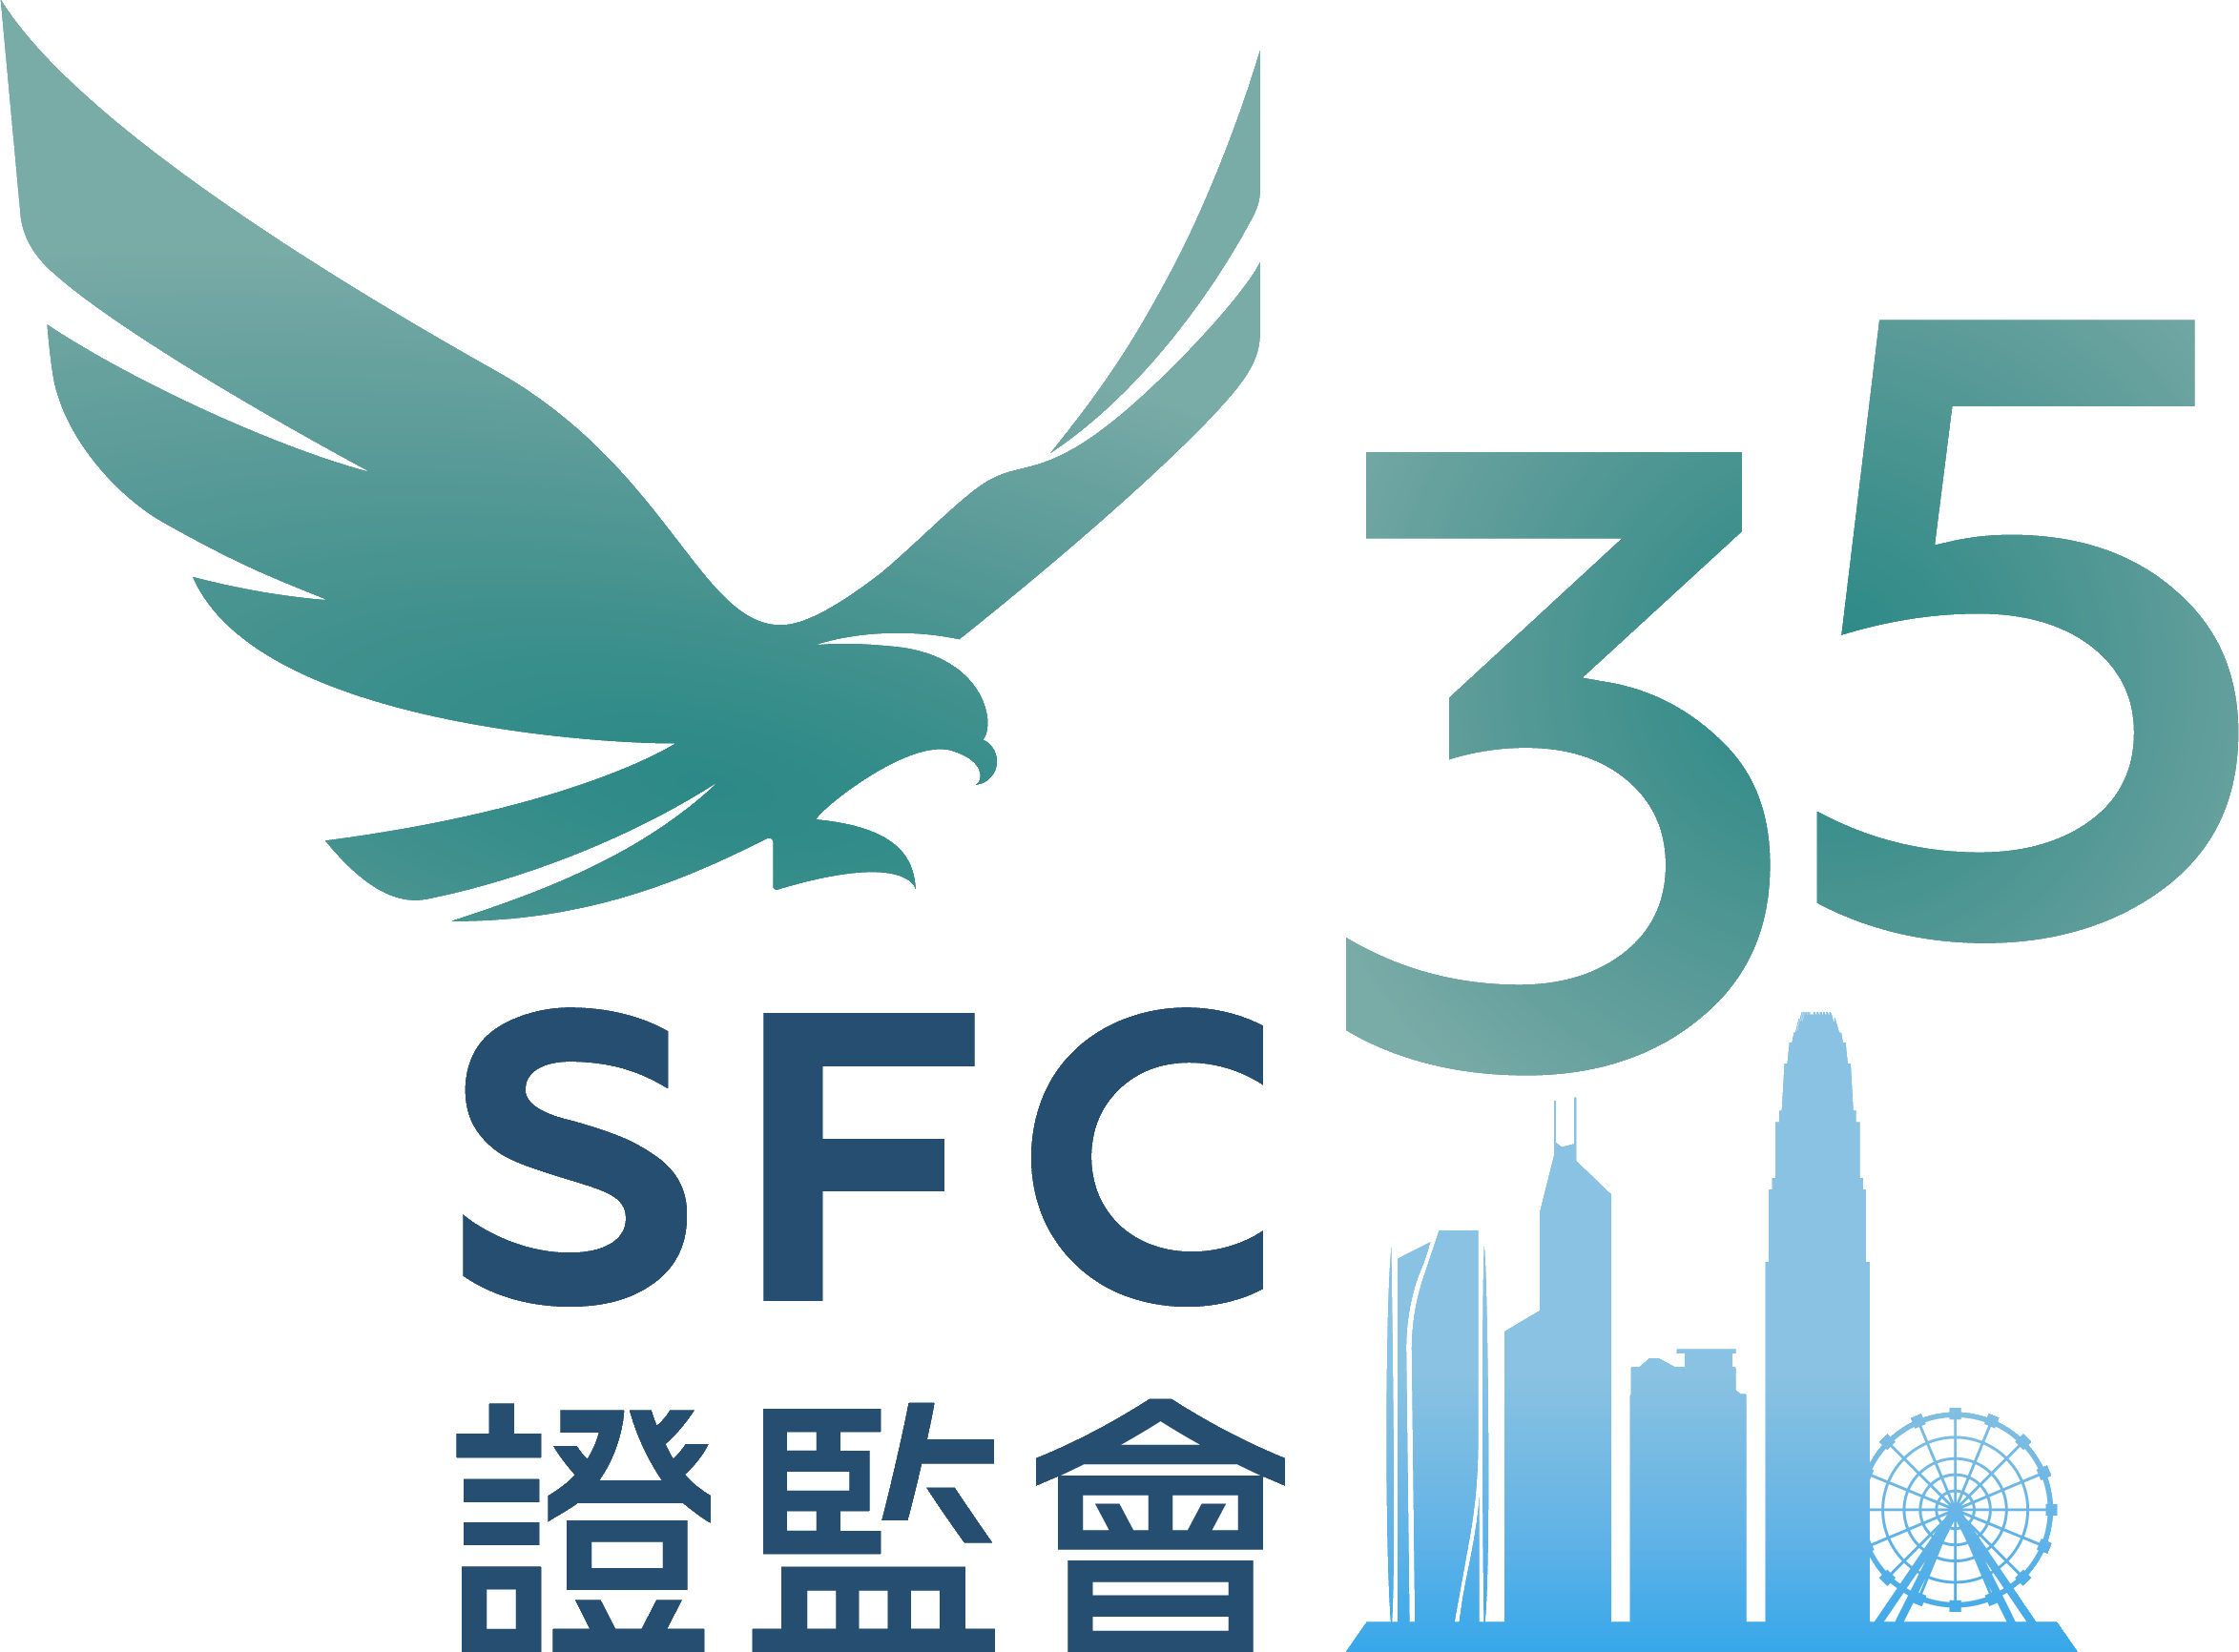 www.sfc.hk